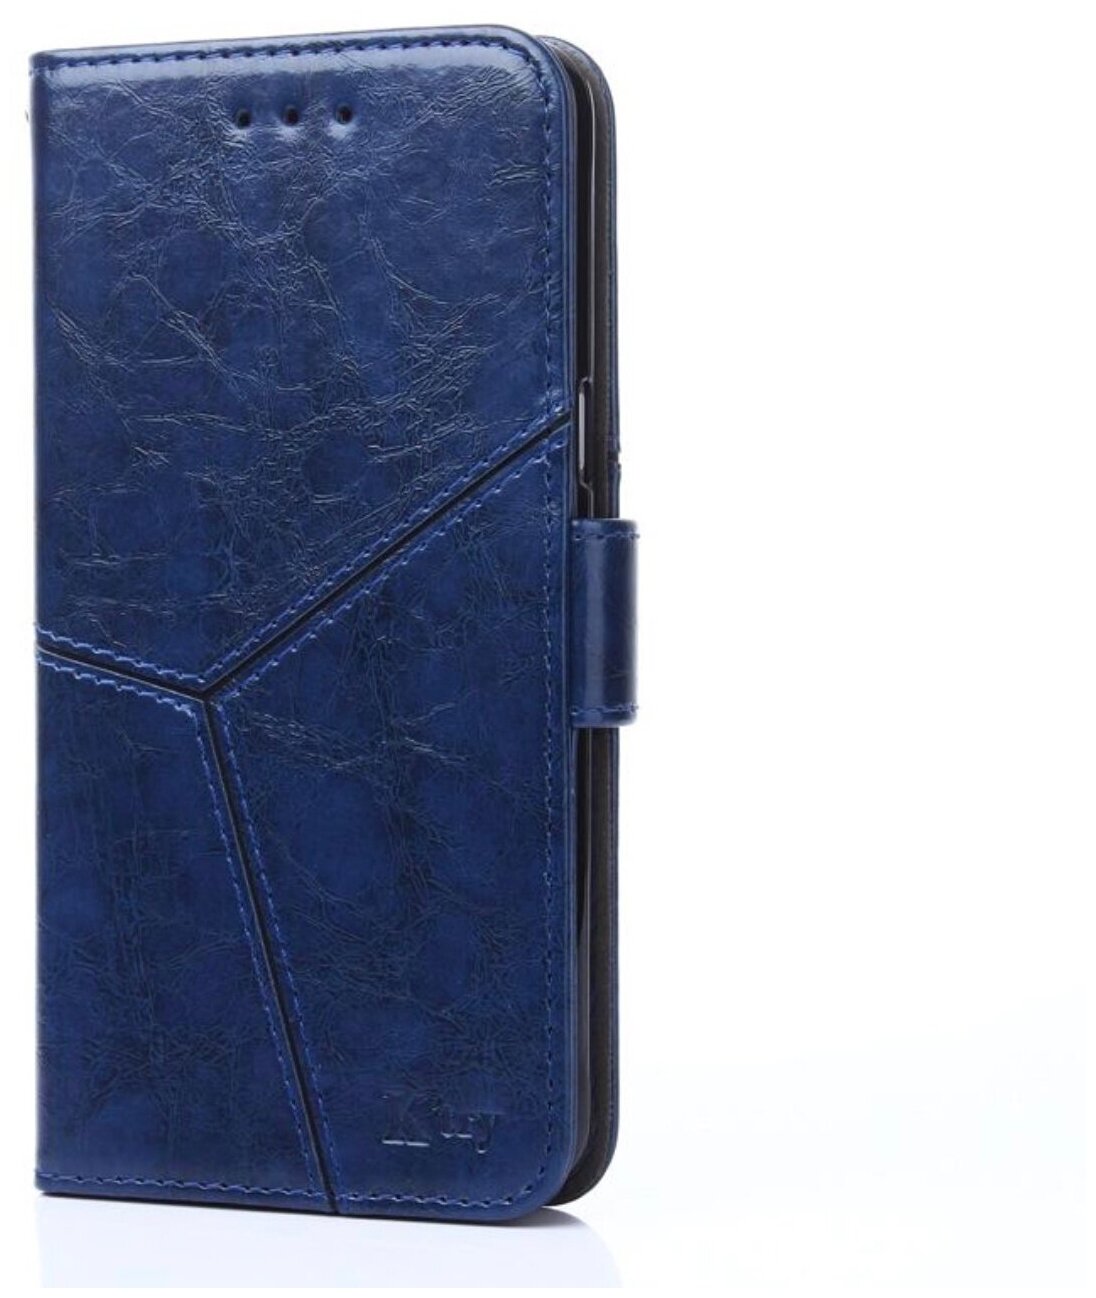 Фирменный чехол-книжка для Meizu V8 из качественной импортной кожи прошитый по контуру с необычным геометрическим швом цвет синий MyPads